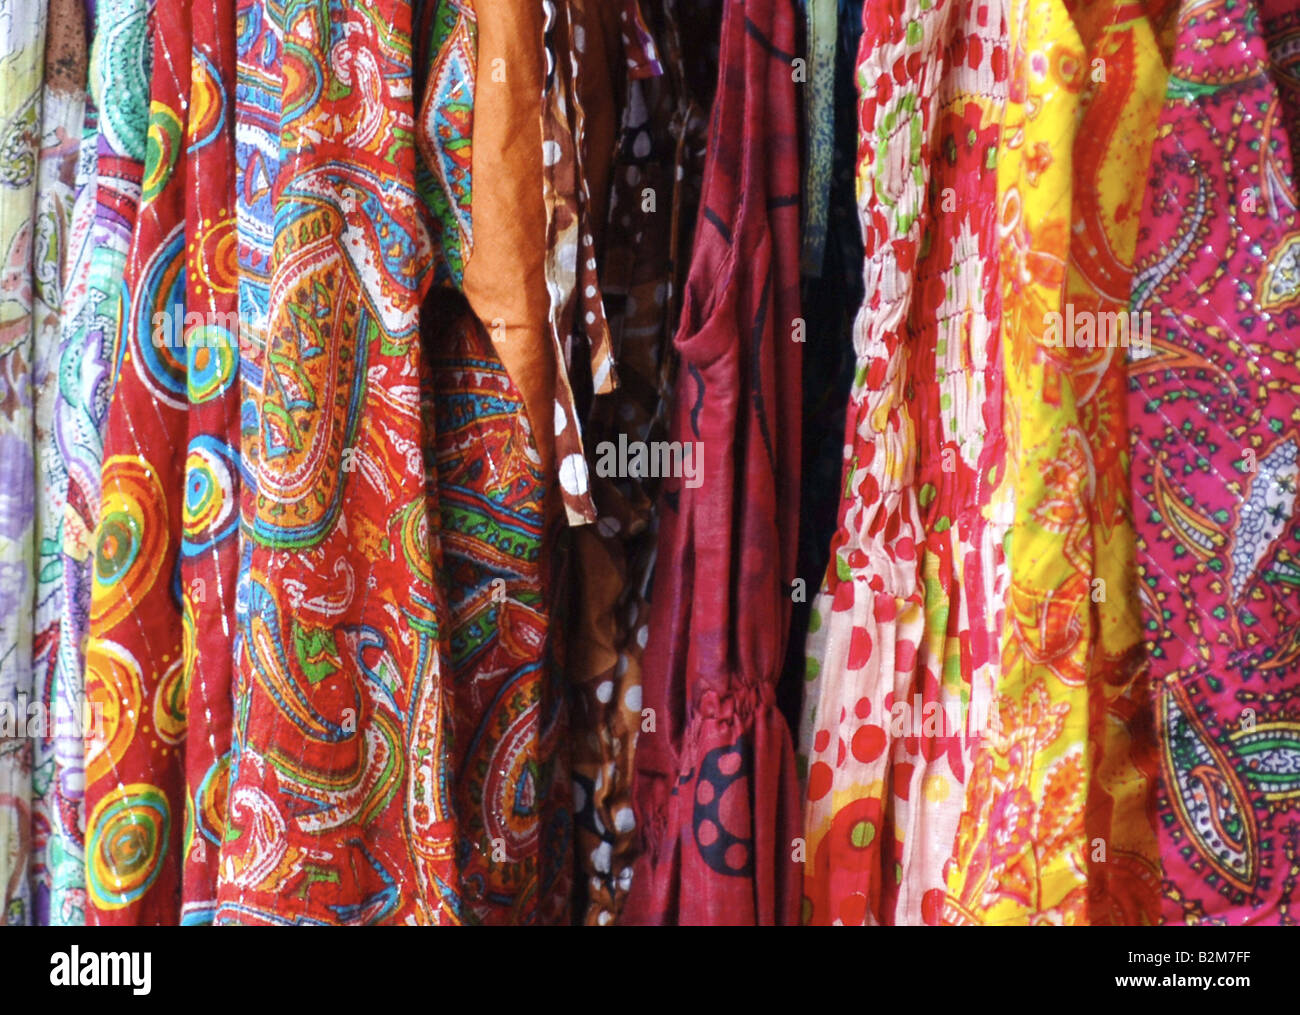 Eine Auswahl von bunten Kleidern und Pashminas zum Verkauf an einem kleinen Marktstand in Oxford, England. Stockfoto